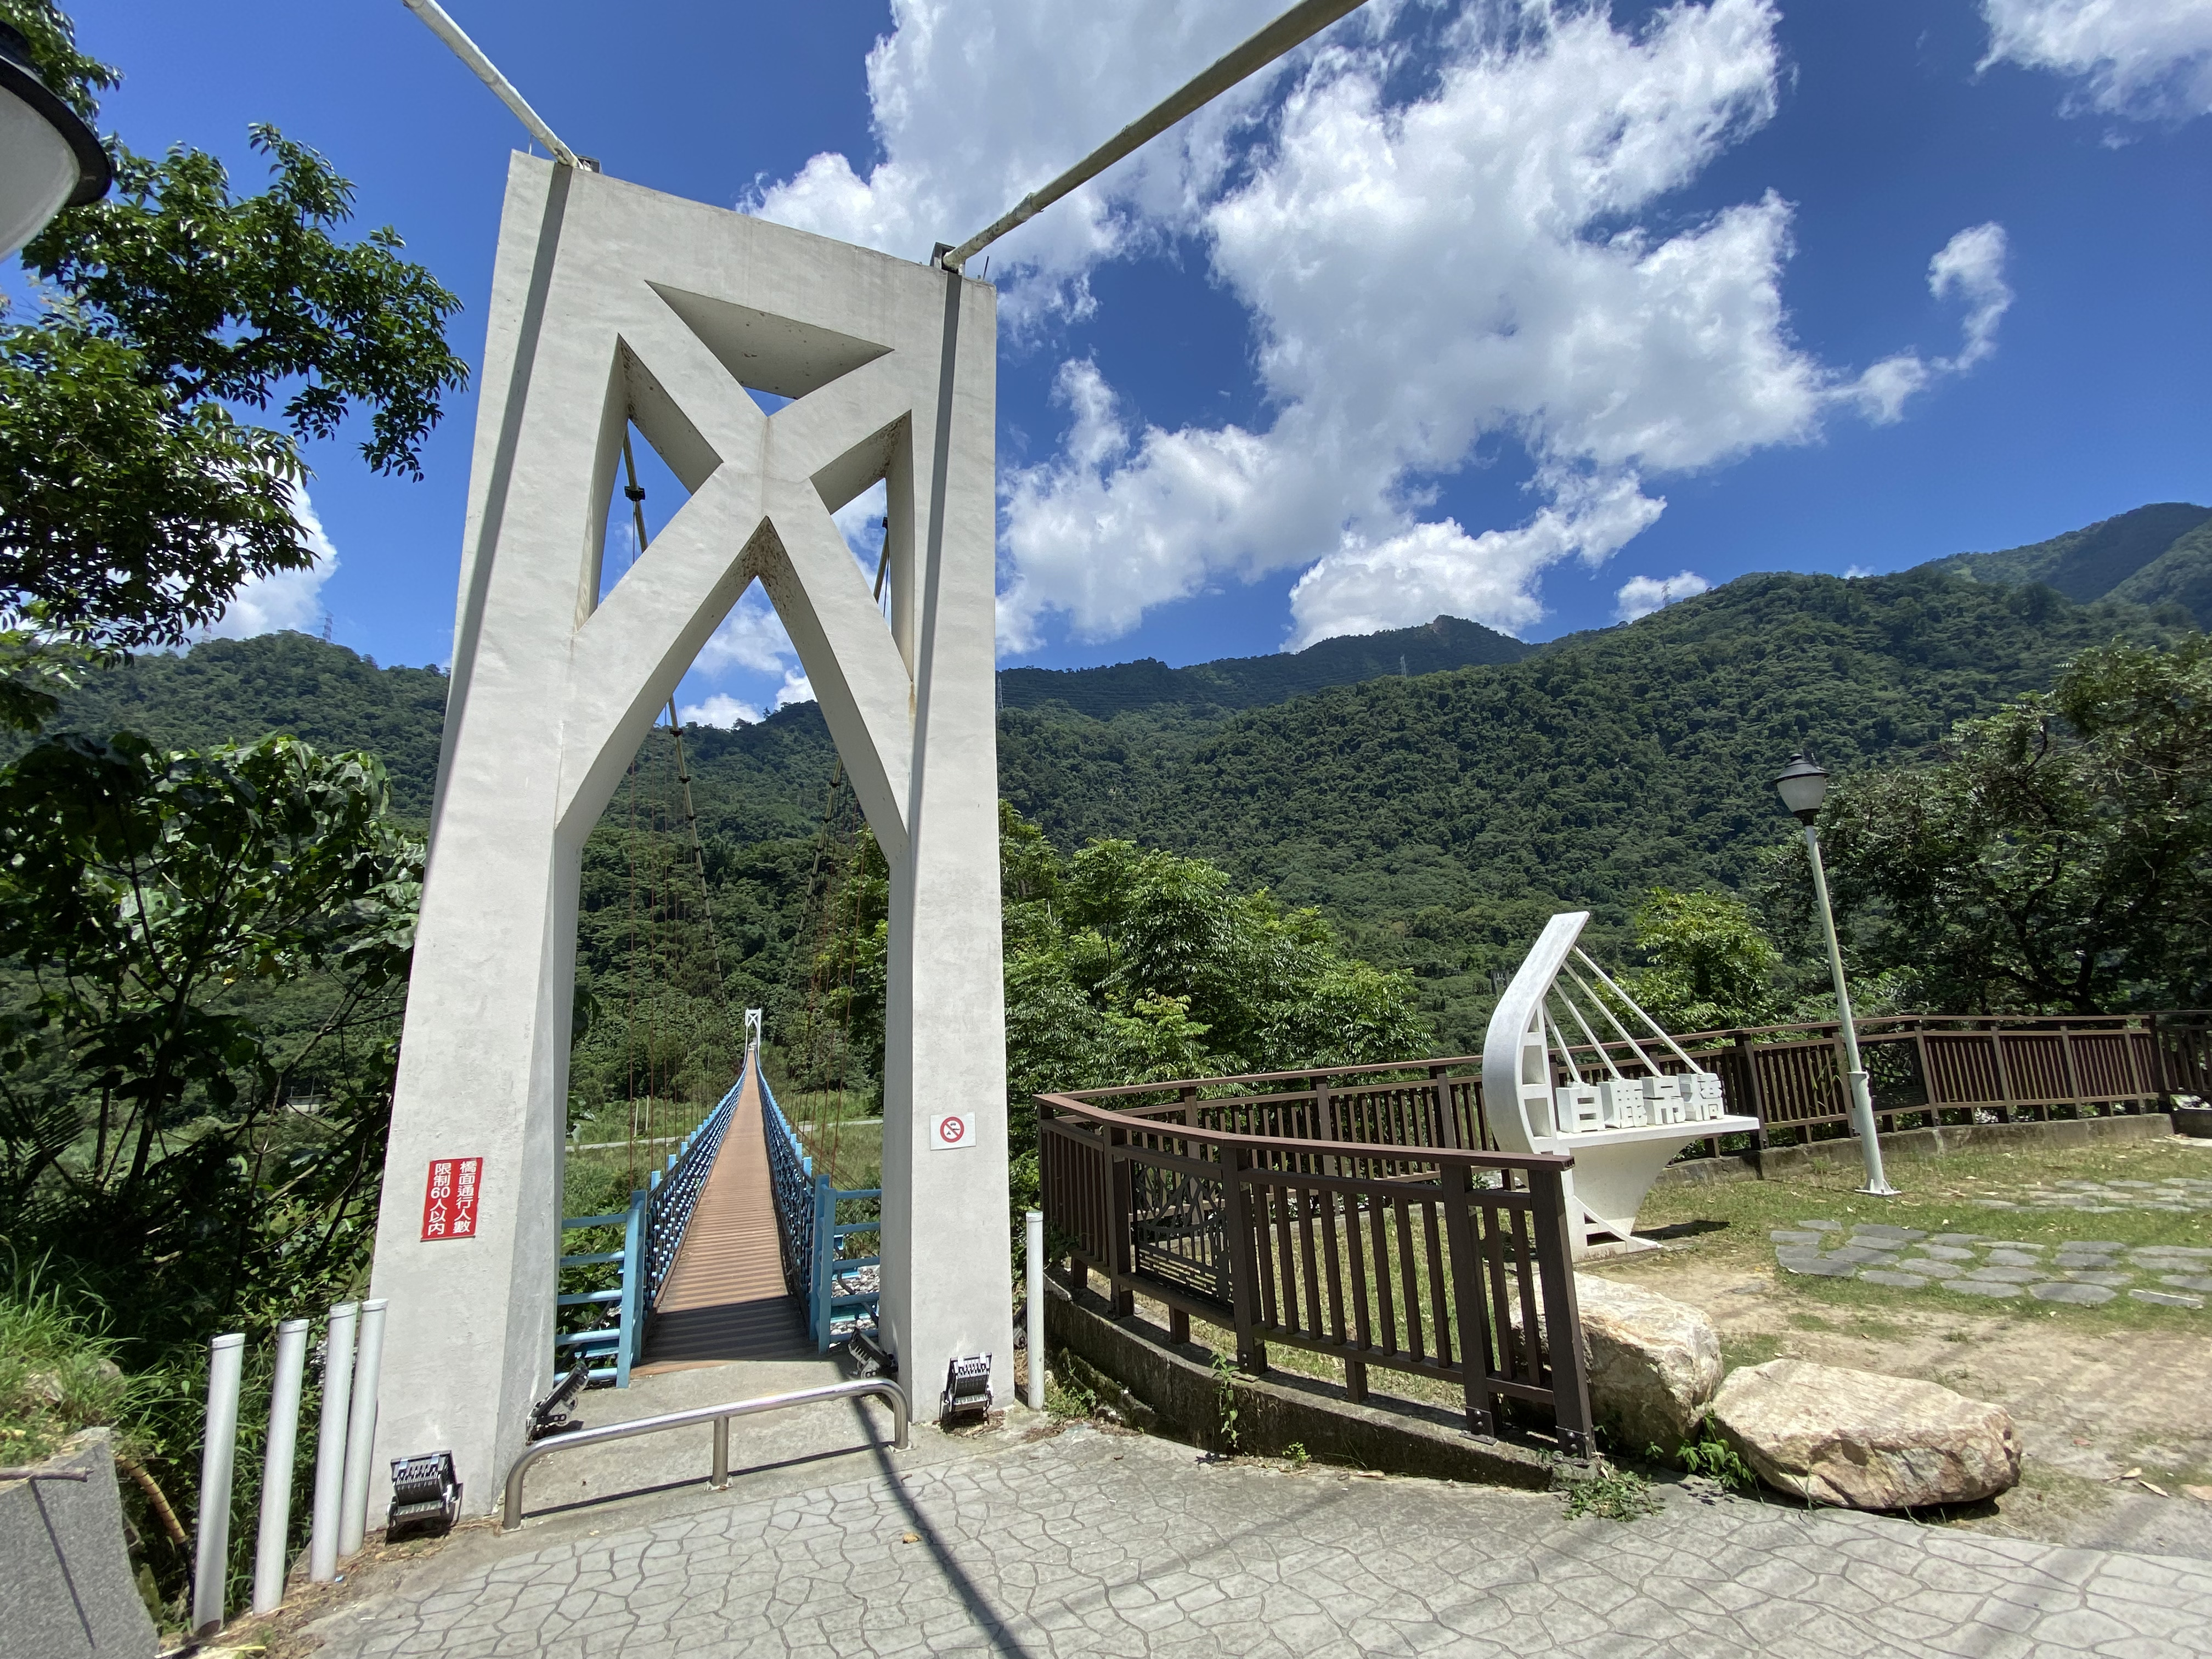 Bai Lu Suspension Bridge